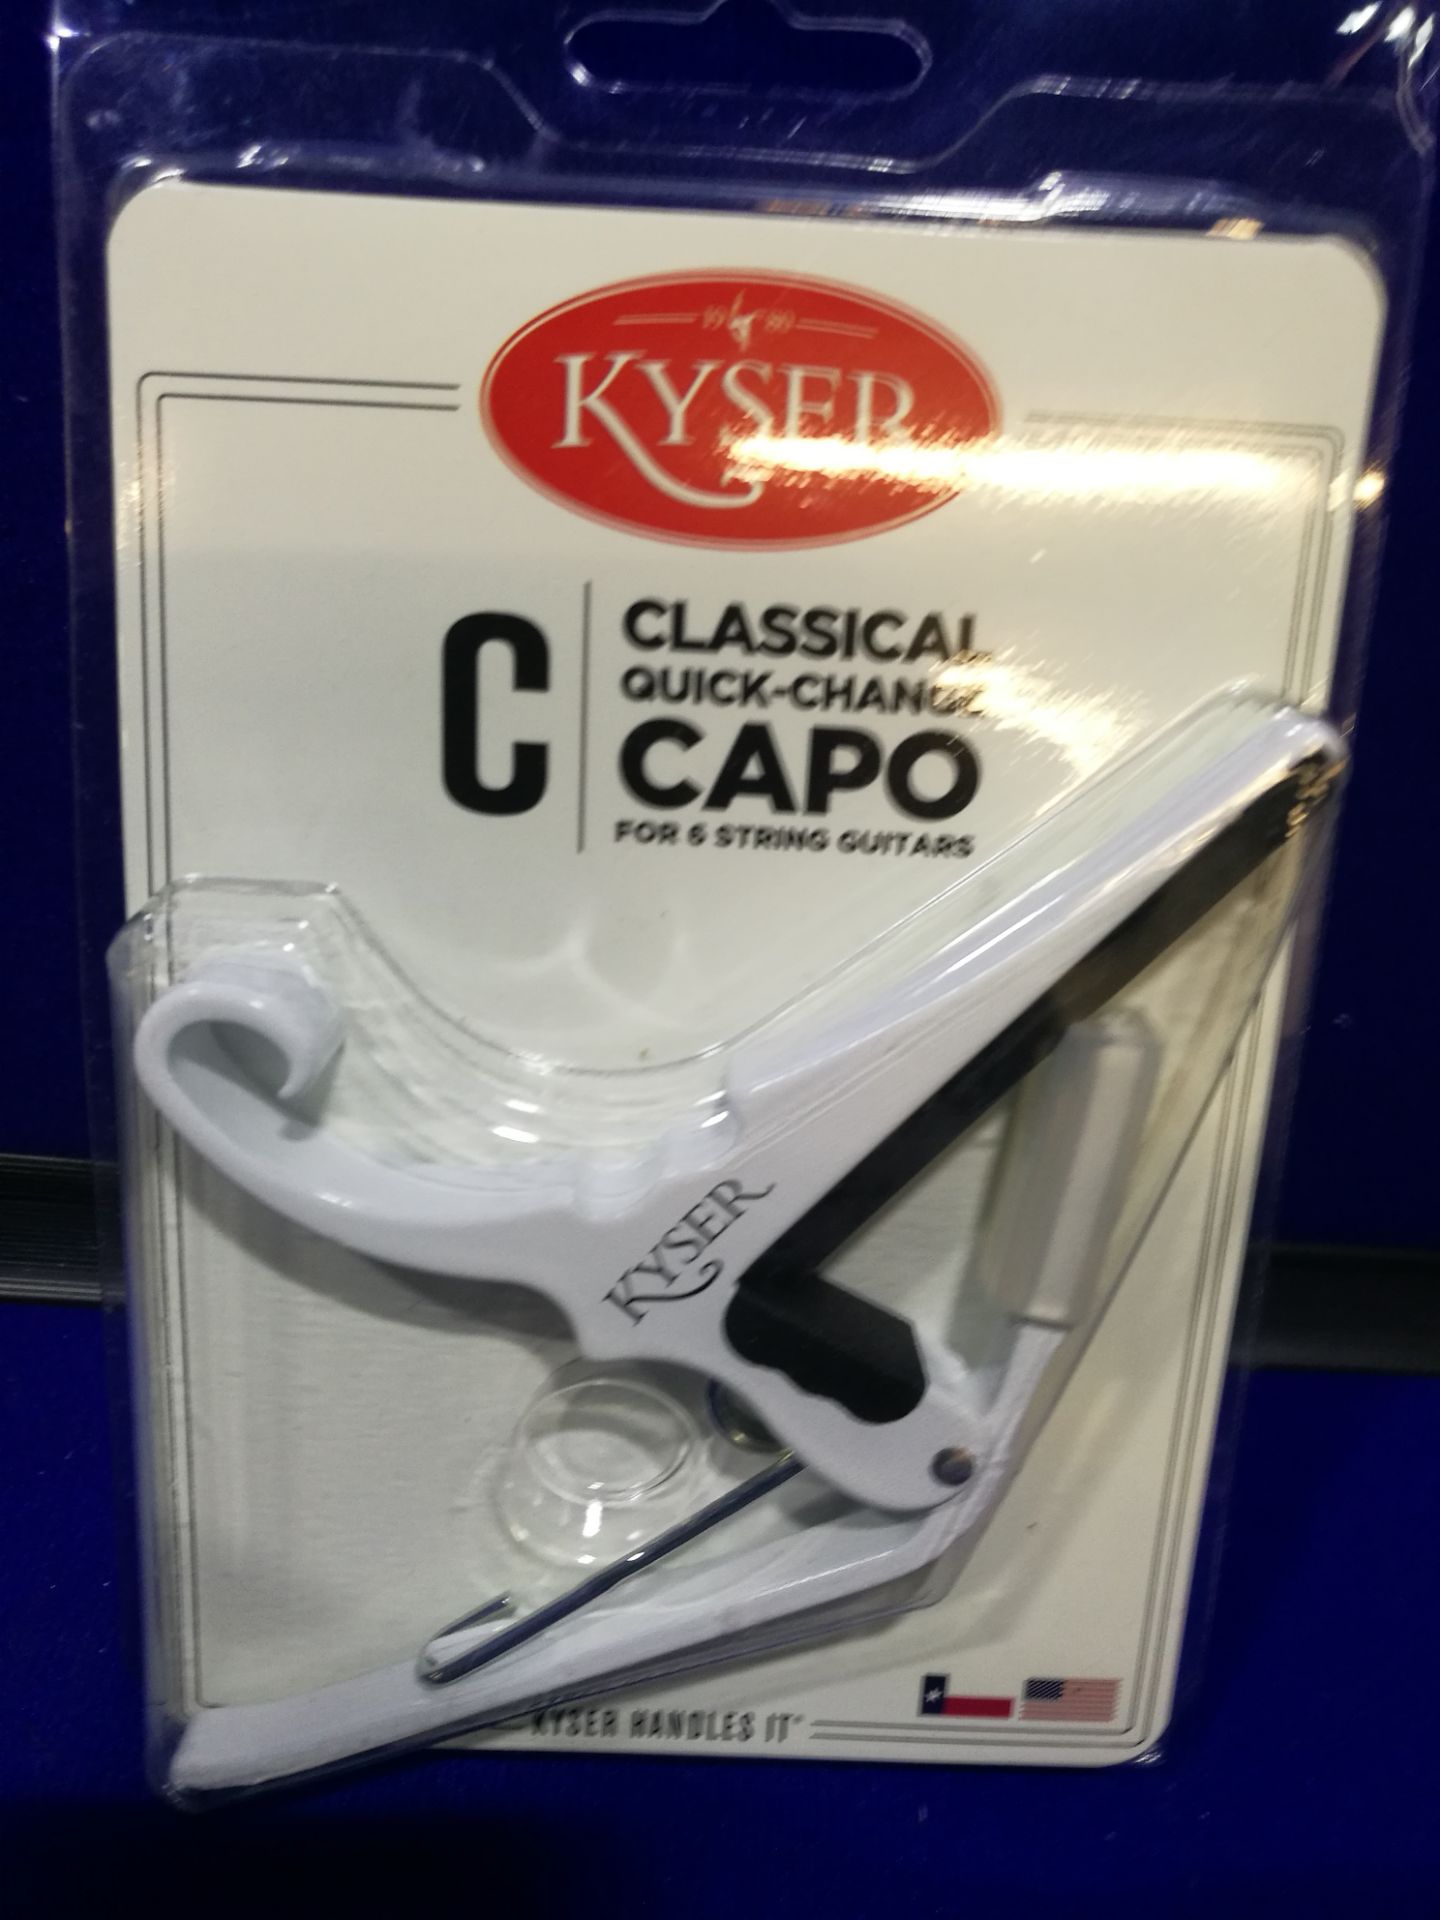 Kyser Quick Change Capo - Classical, White - KGCWA